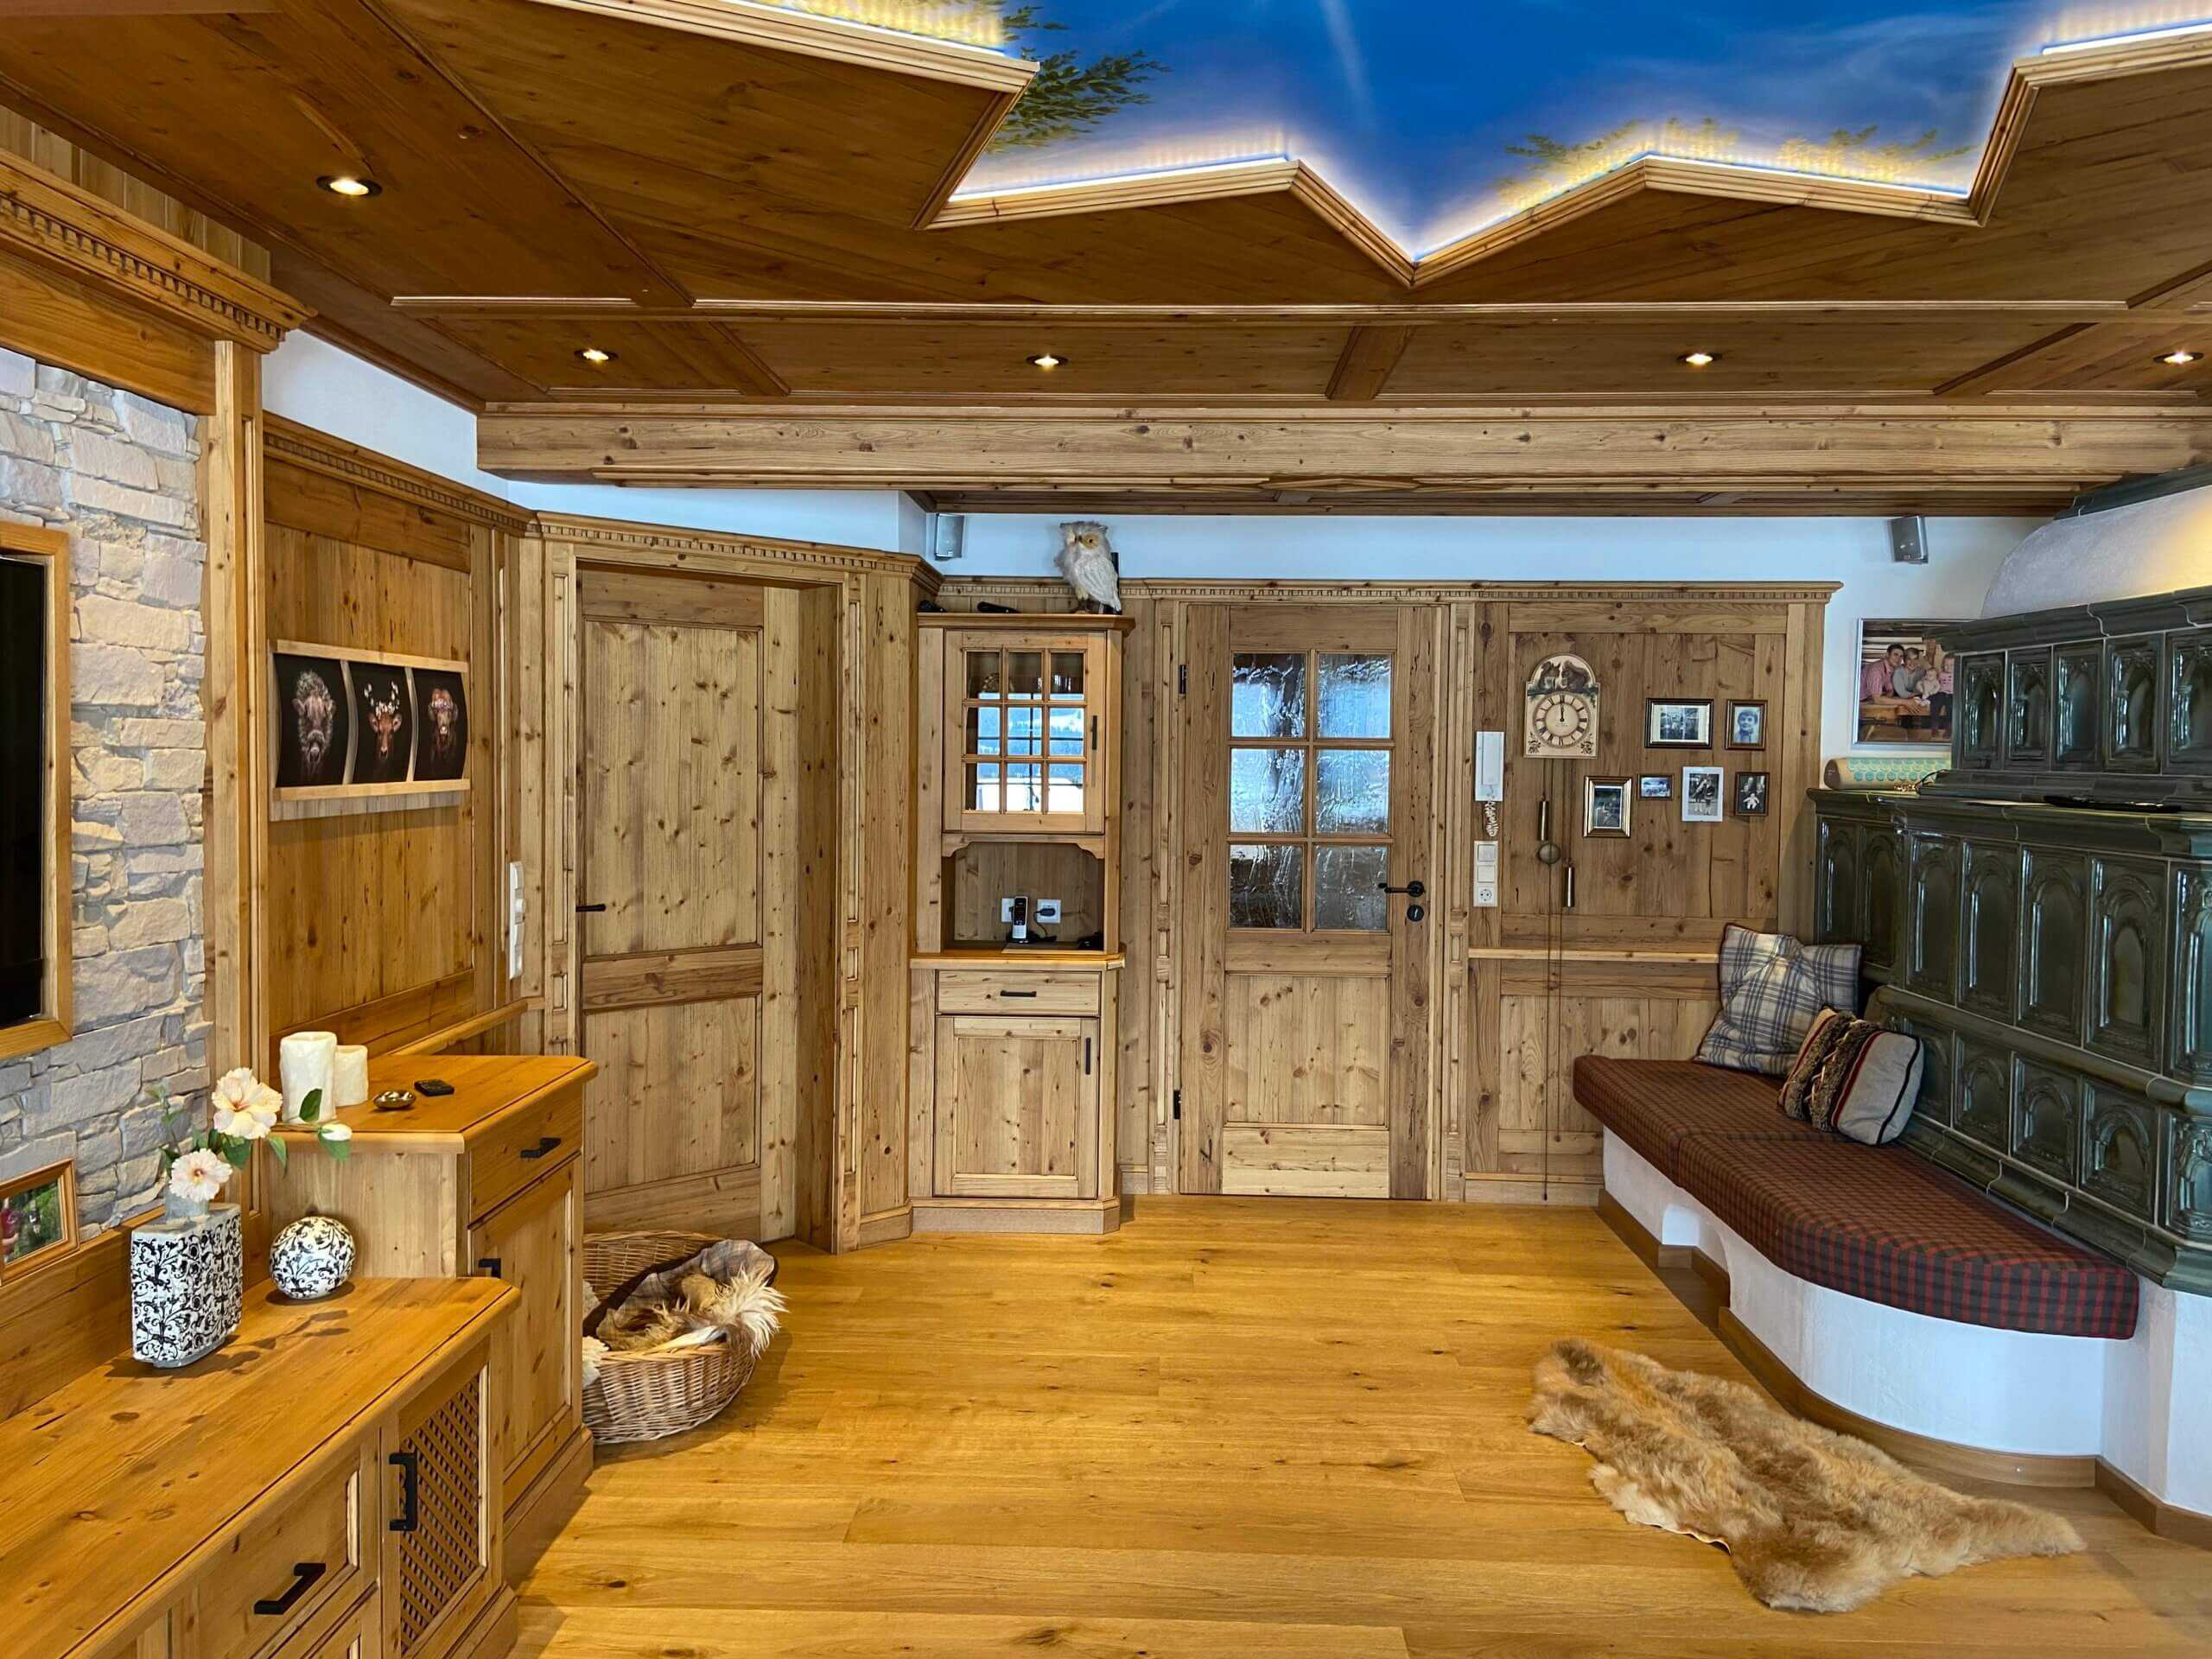 Gemütliches Zimmer in rustikalem Stil aus Holz